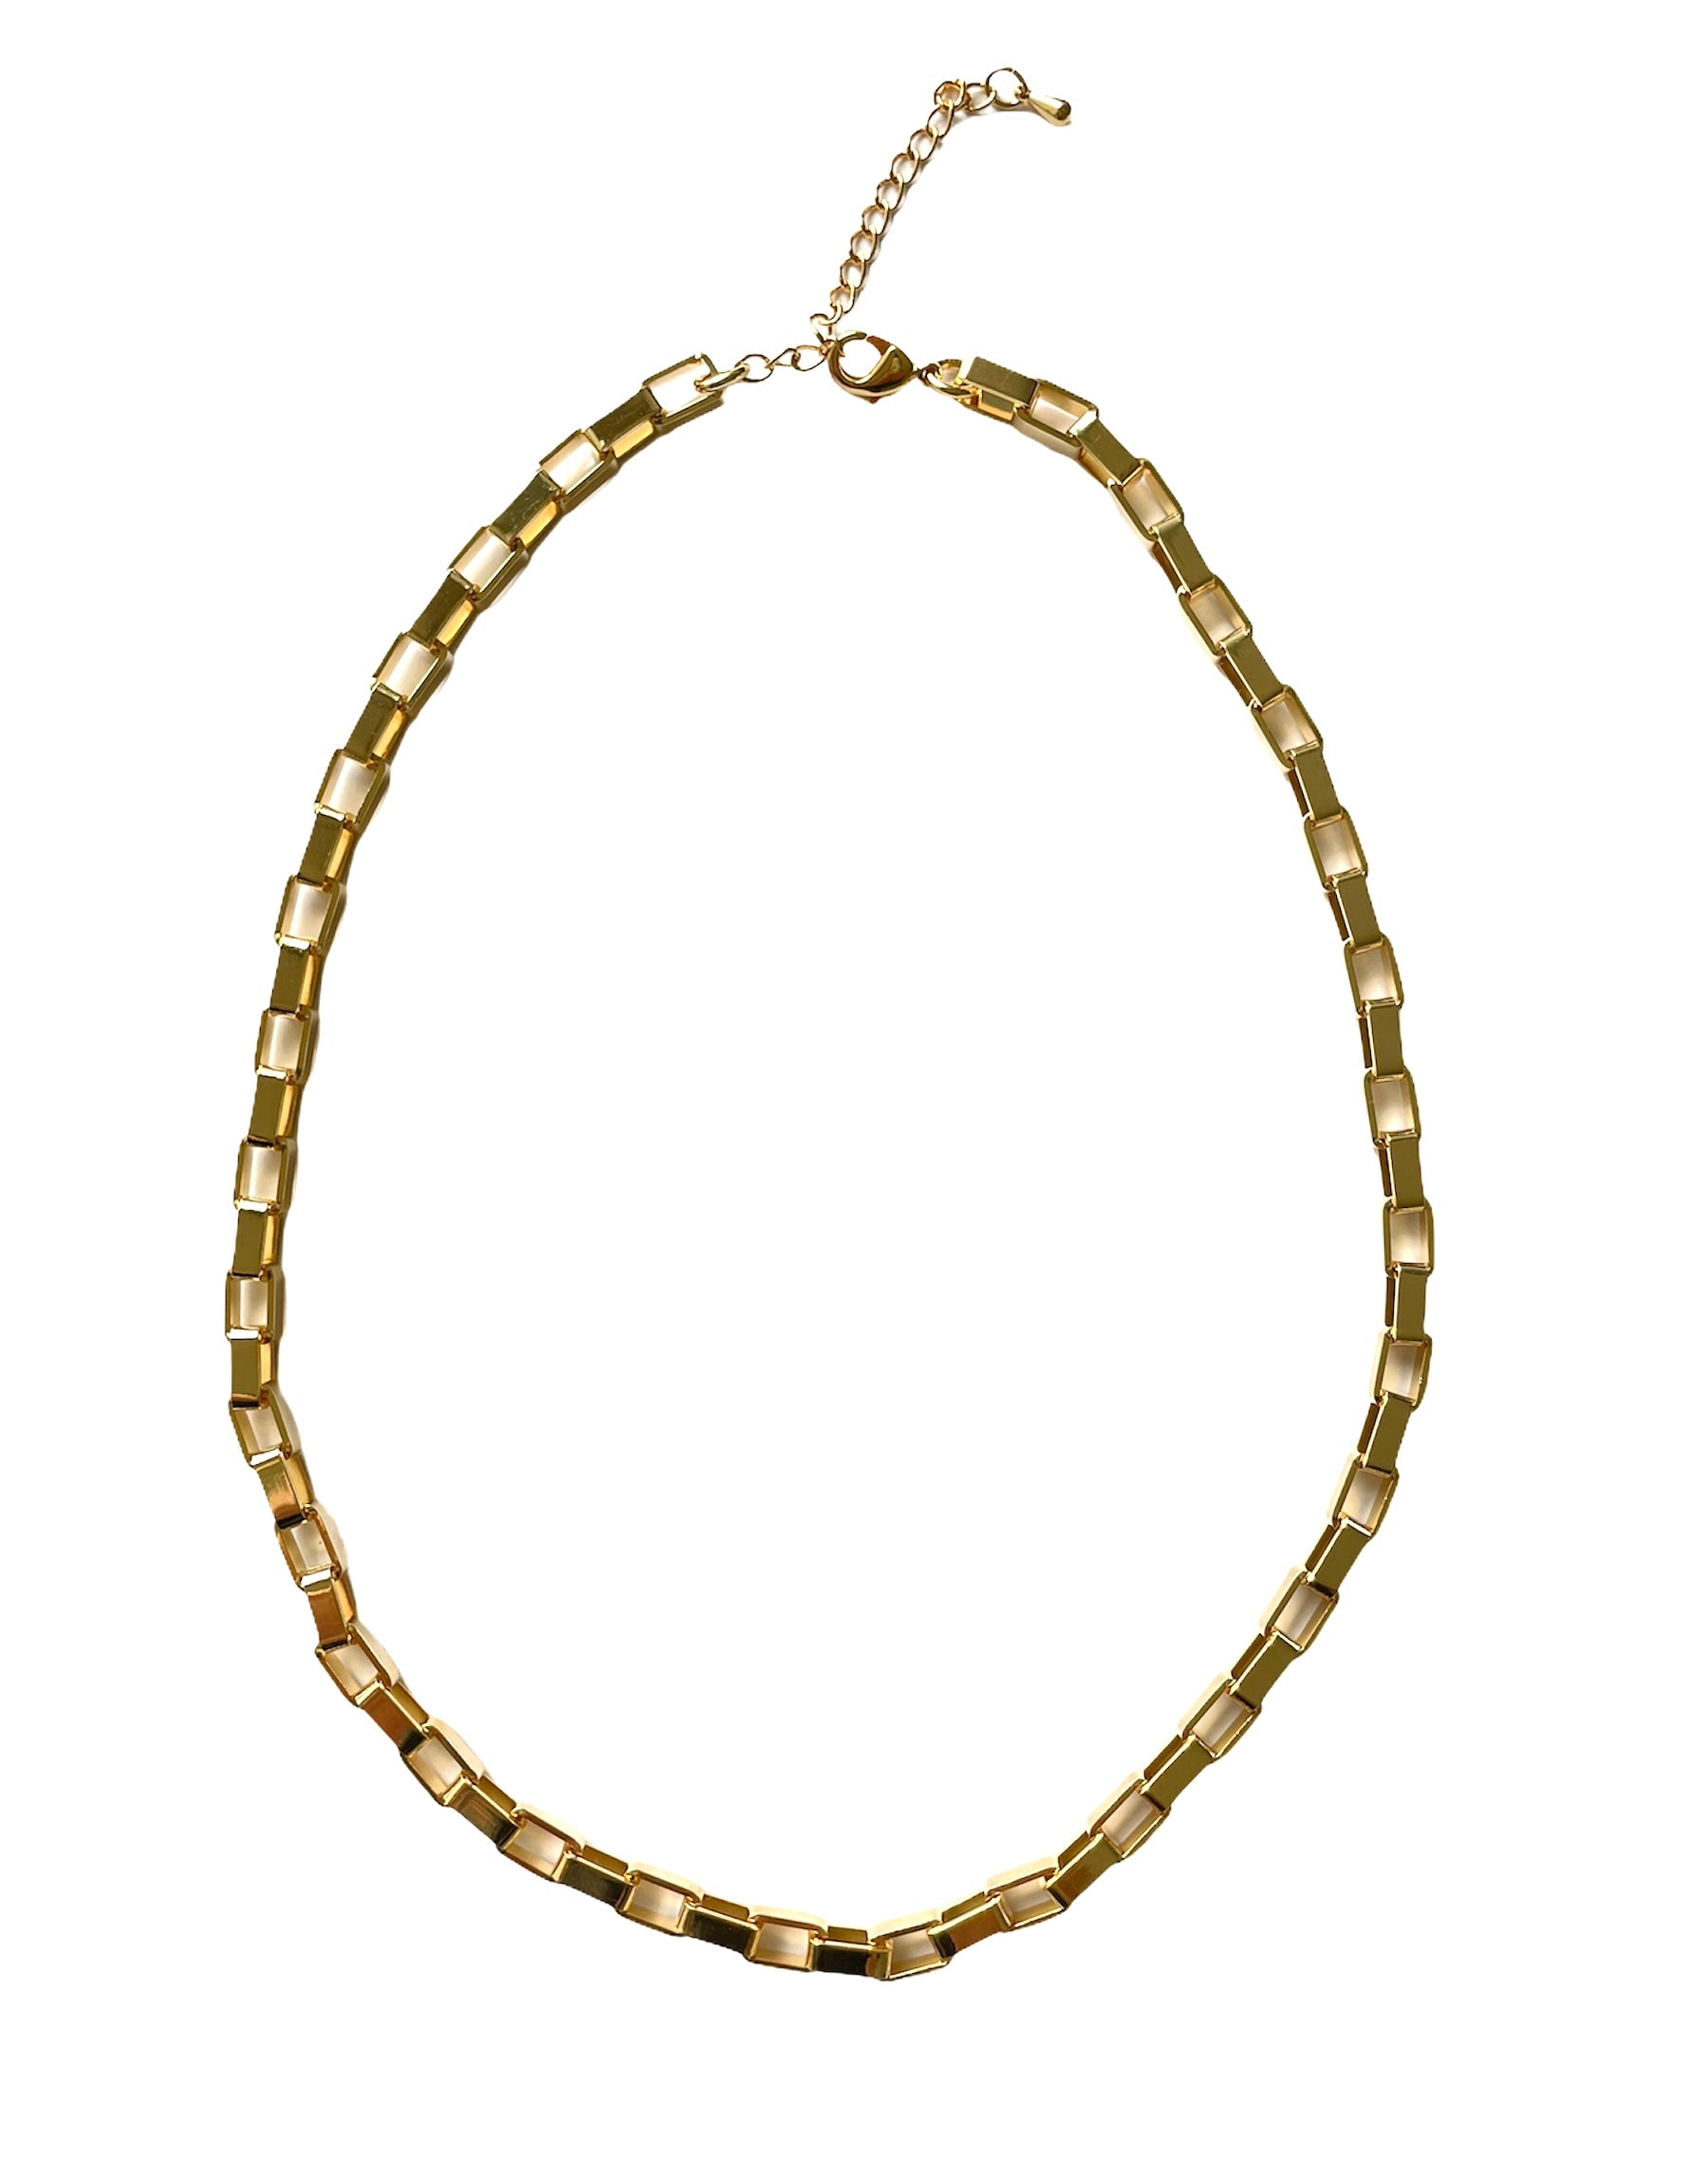 Gold Venetian Chain - Standout Boutique